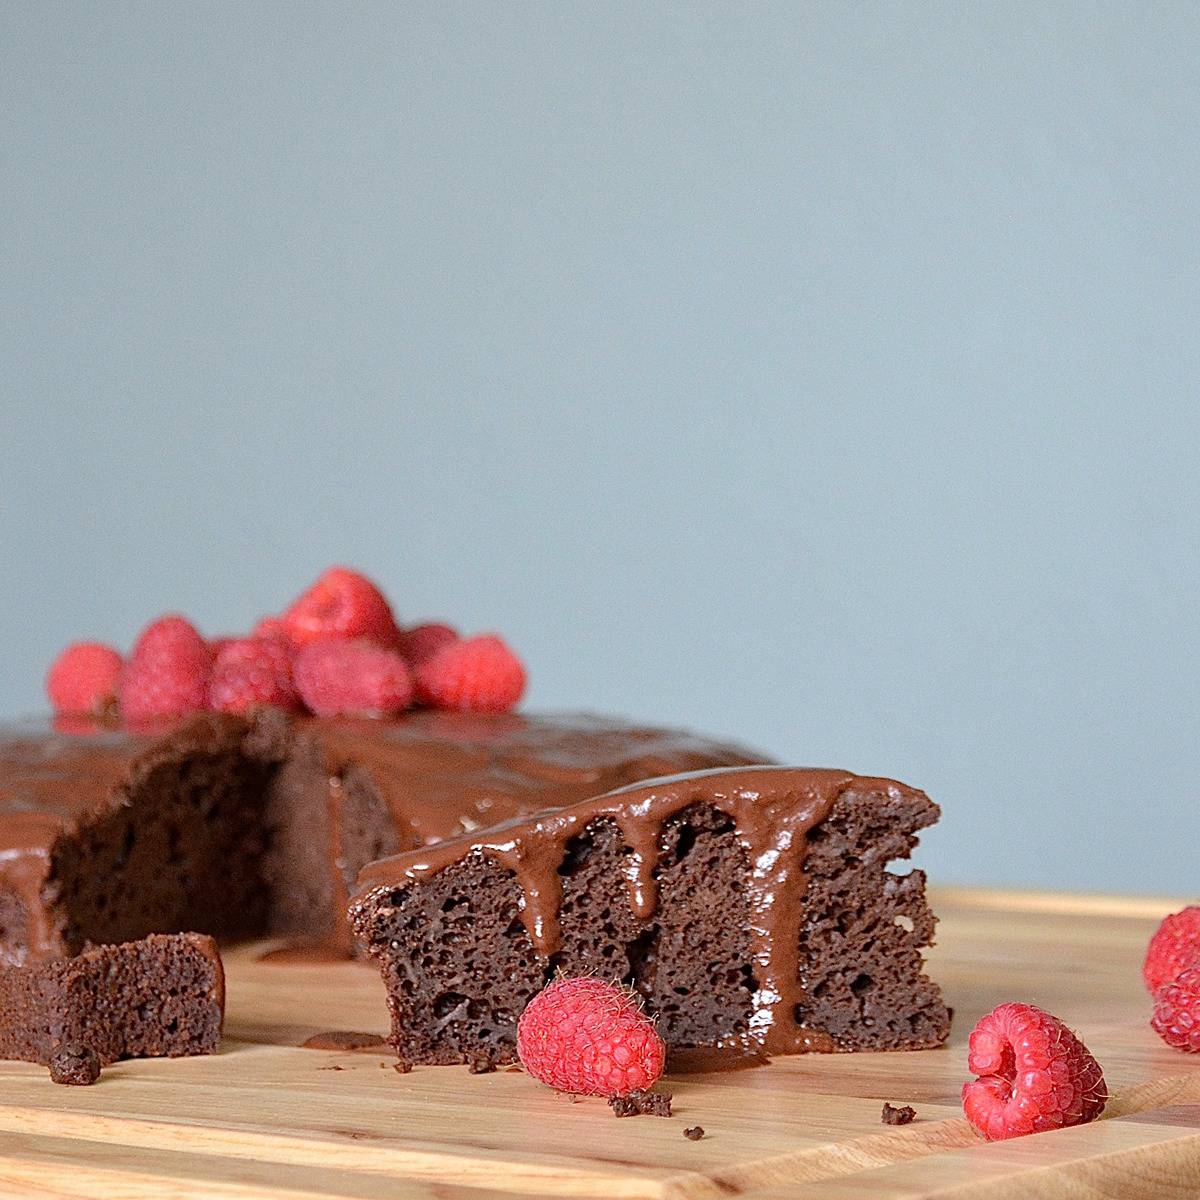 Chocolate mud cake with fresh raspberries